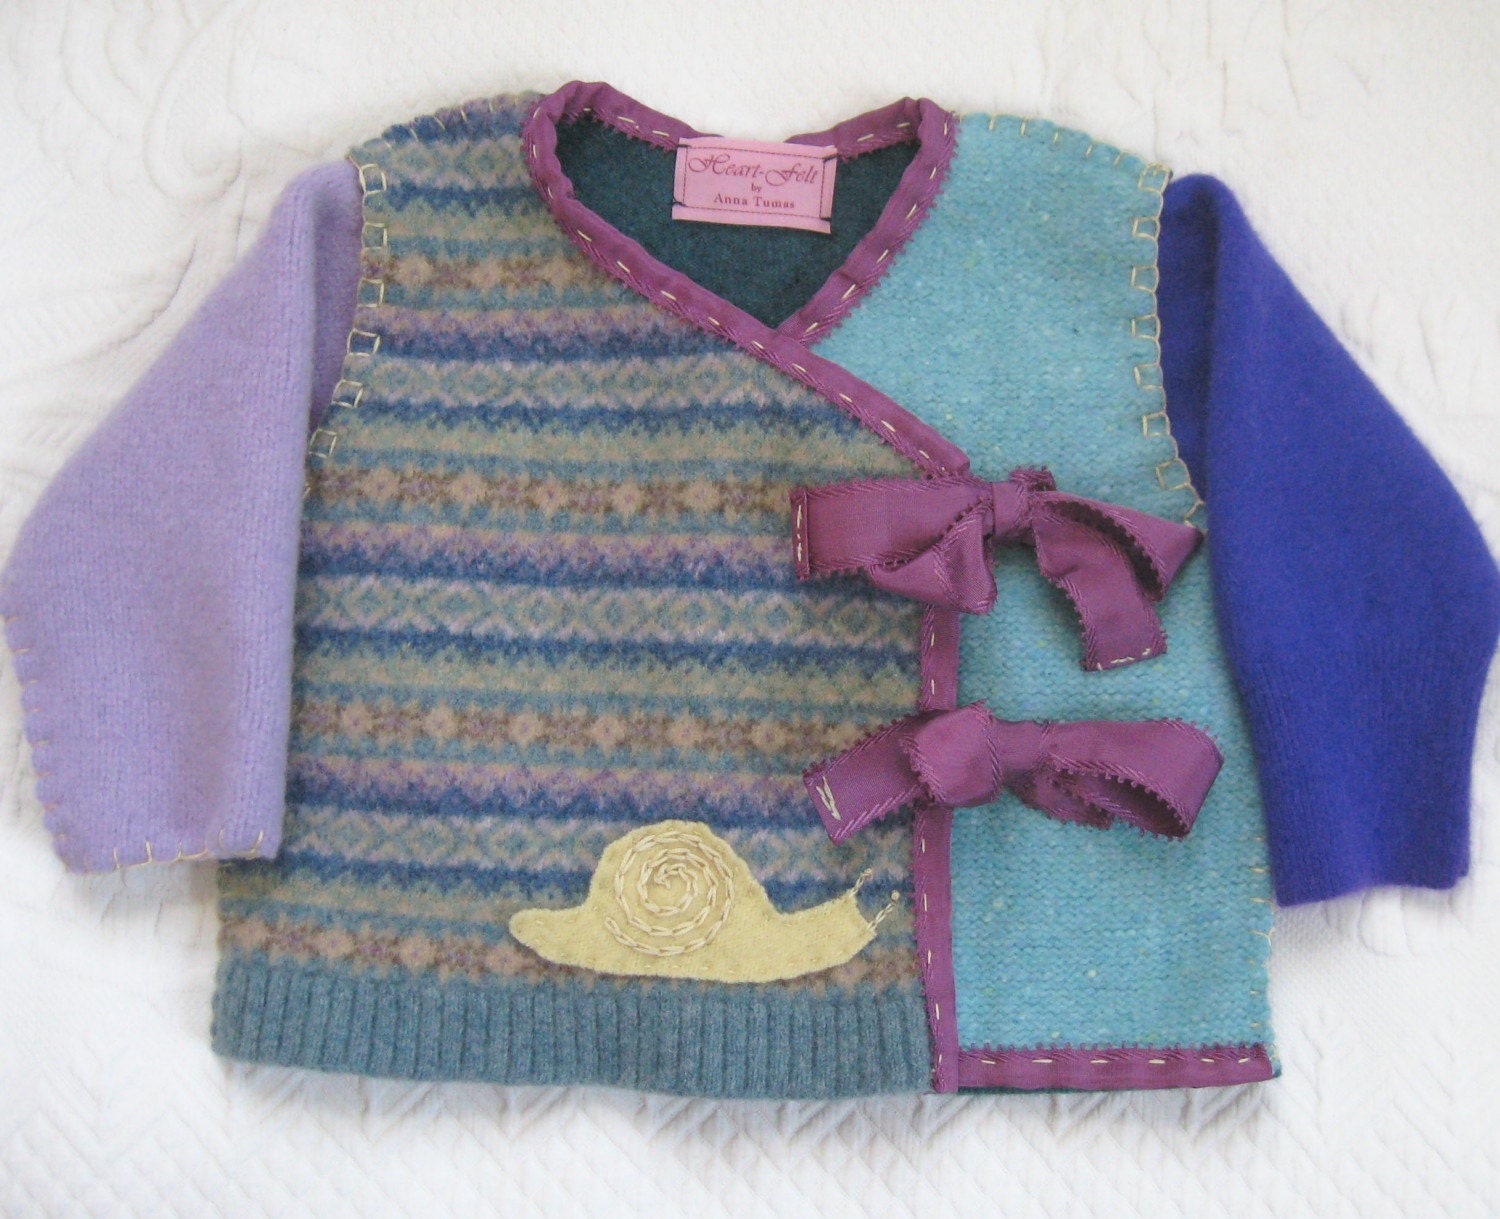 Resweater: Recycled wool clothing week, Heartfeltbaby